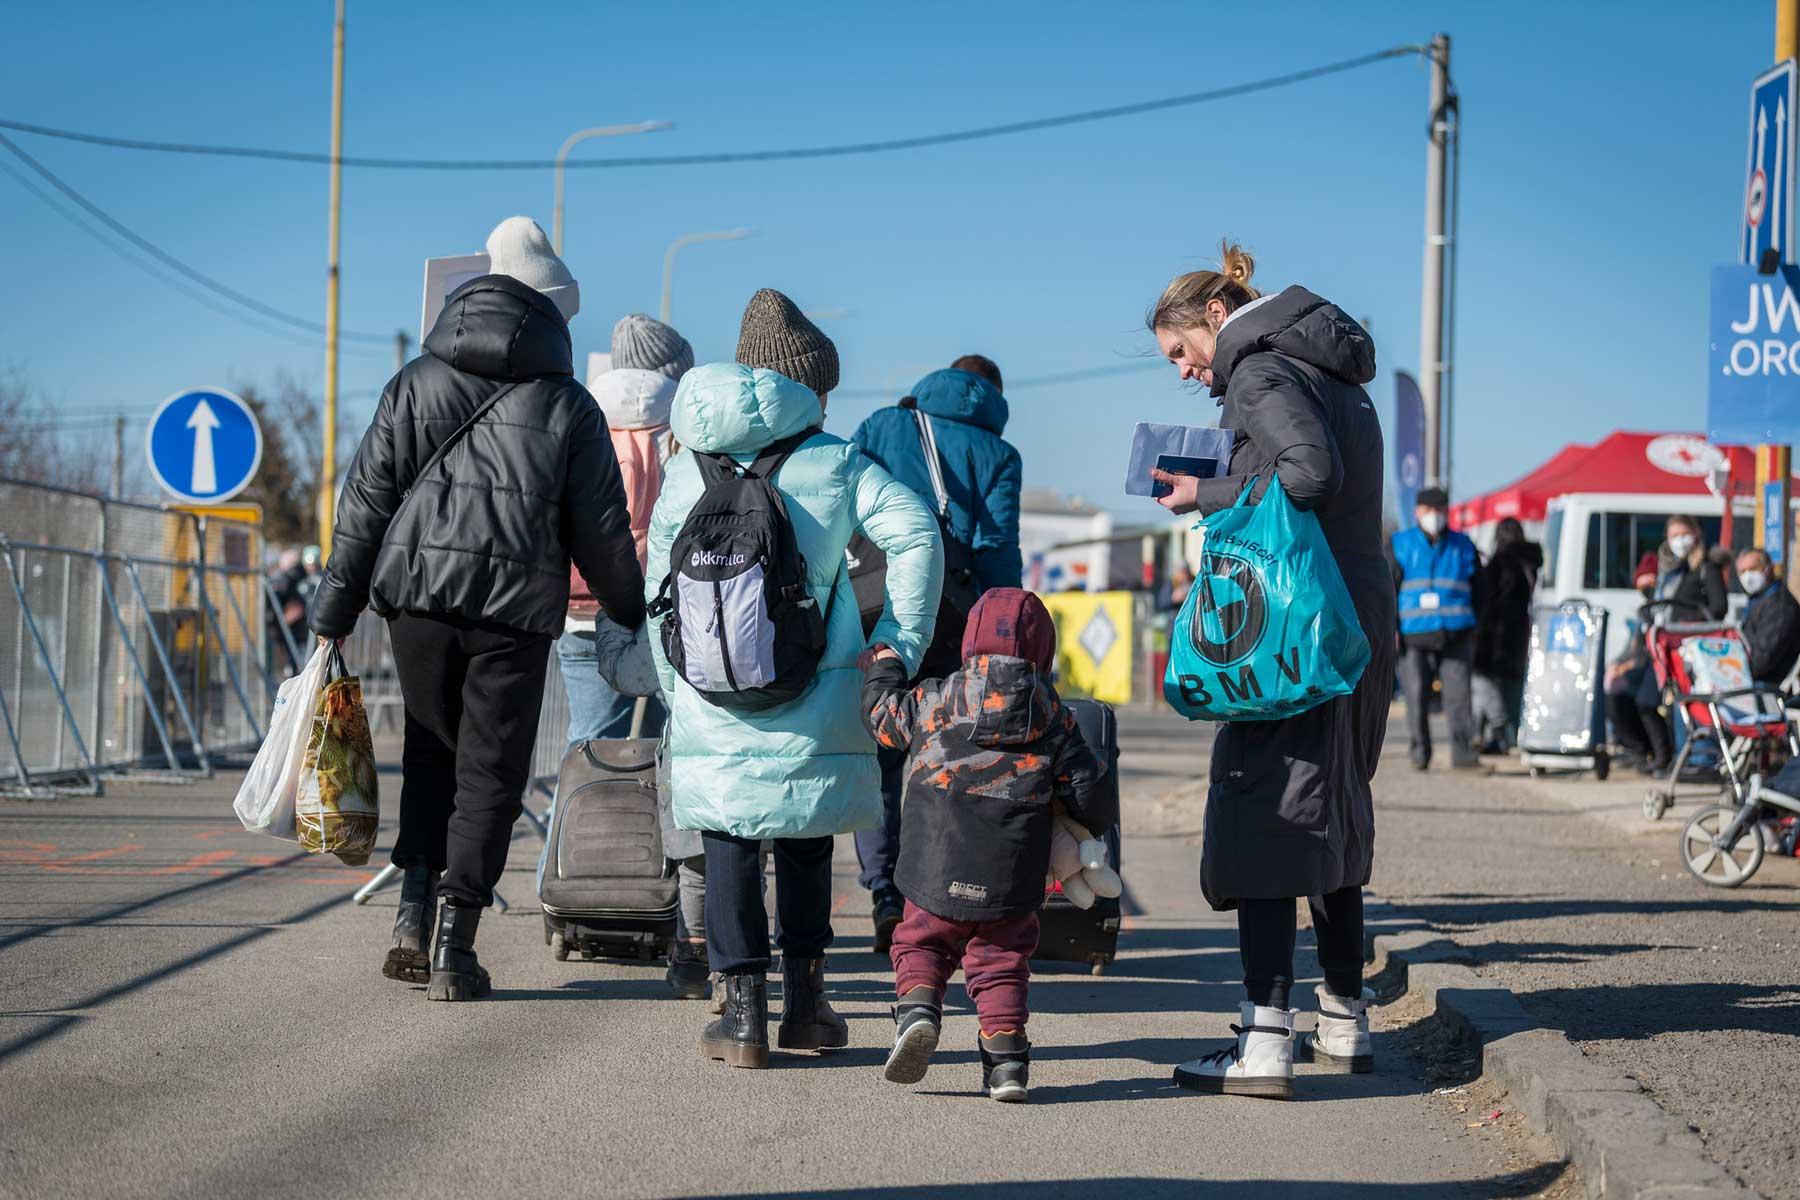 Auf der Flucht: Frauen und Kinder an der Grenze zwischen der Slowakei und der Ukraine nach dem russischen Einmarsch im Februar 2022. Foto: LWB/A. Hillert